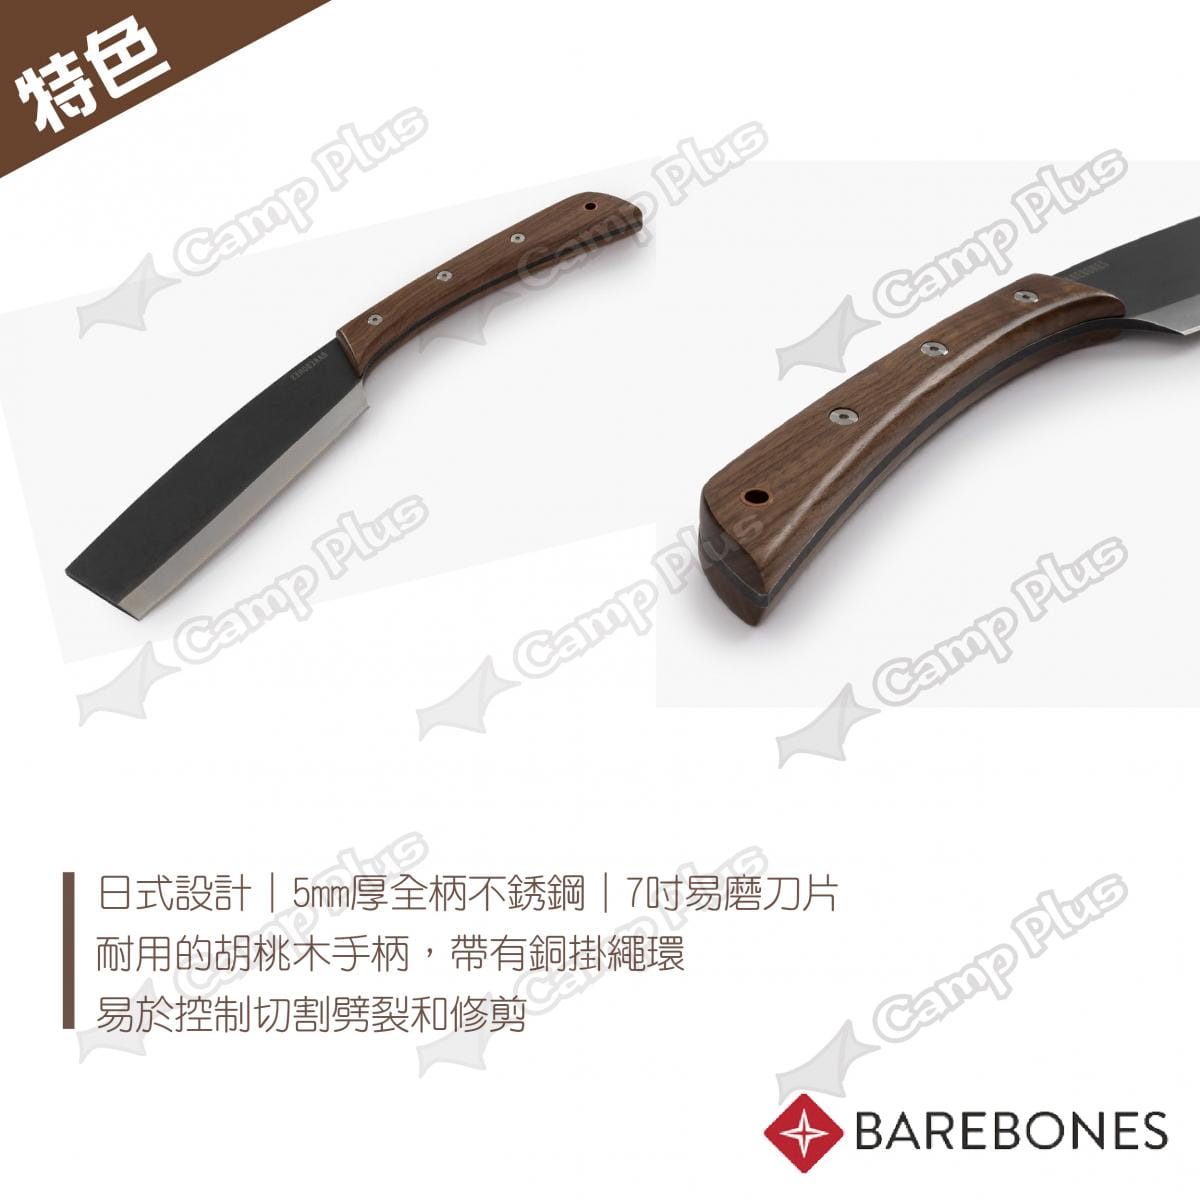 【Barebones】日式鍛造短柴刀_HMS-2126 (悠遊戶外) 3